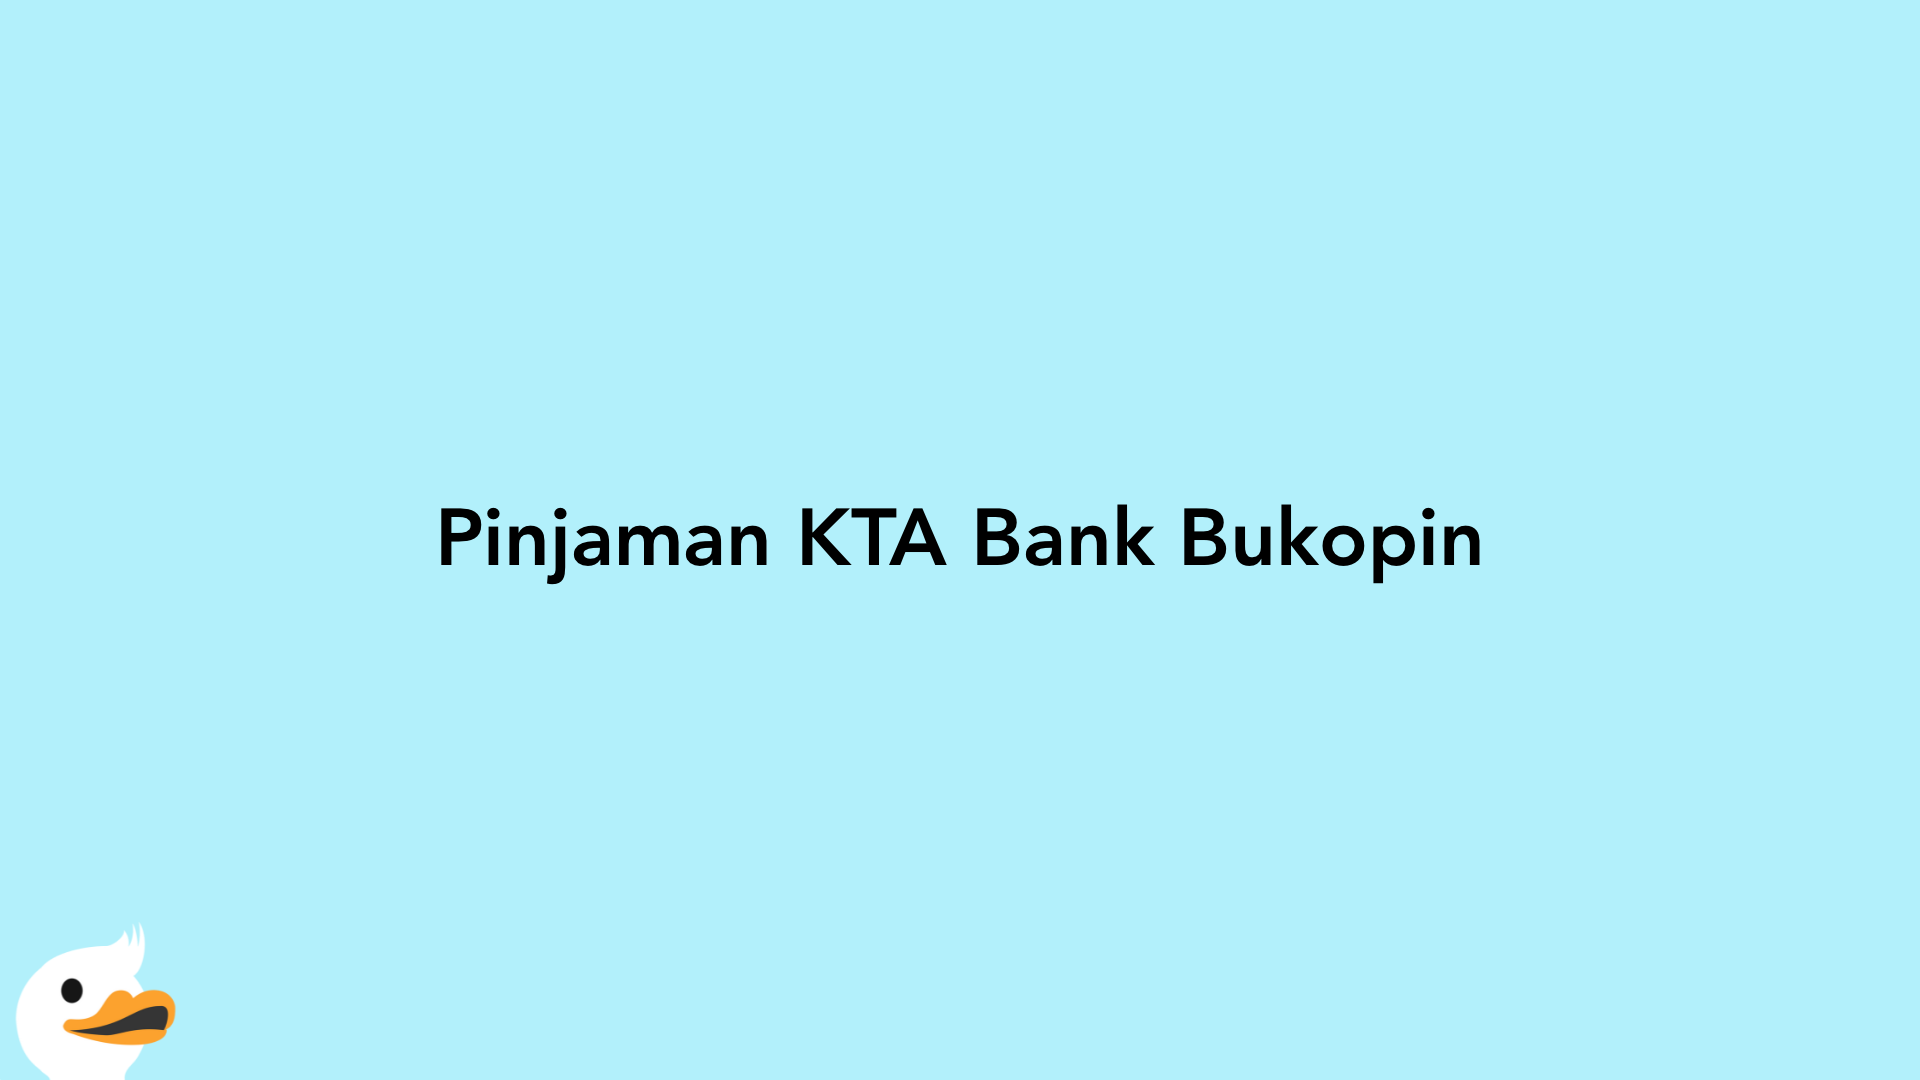 Pinjaman KTA Bank Bukopin